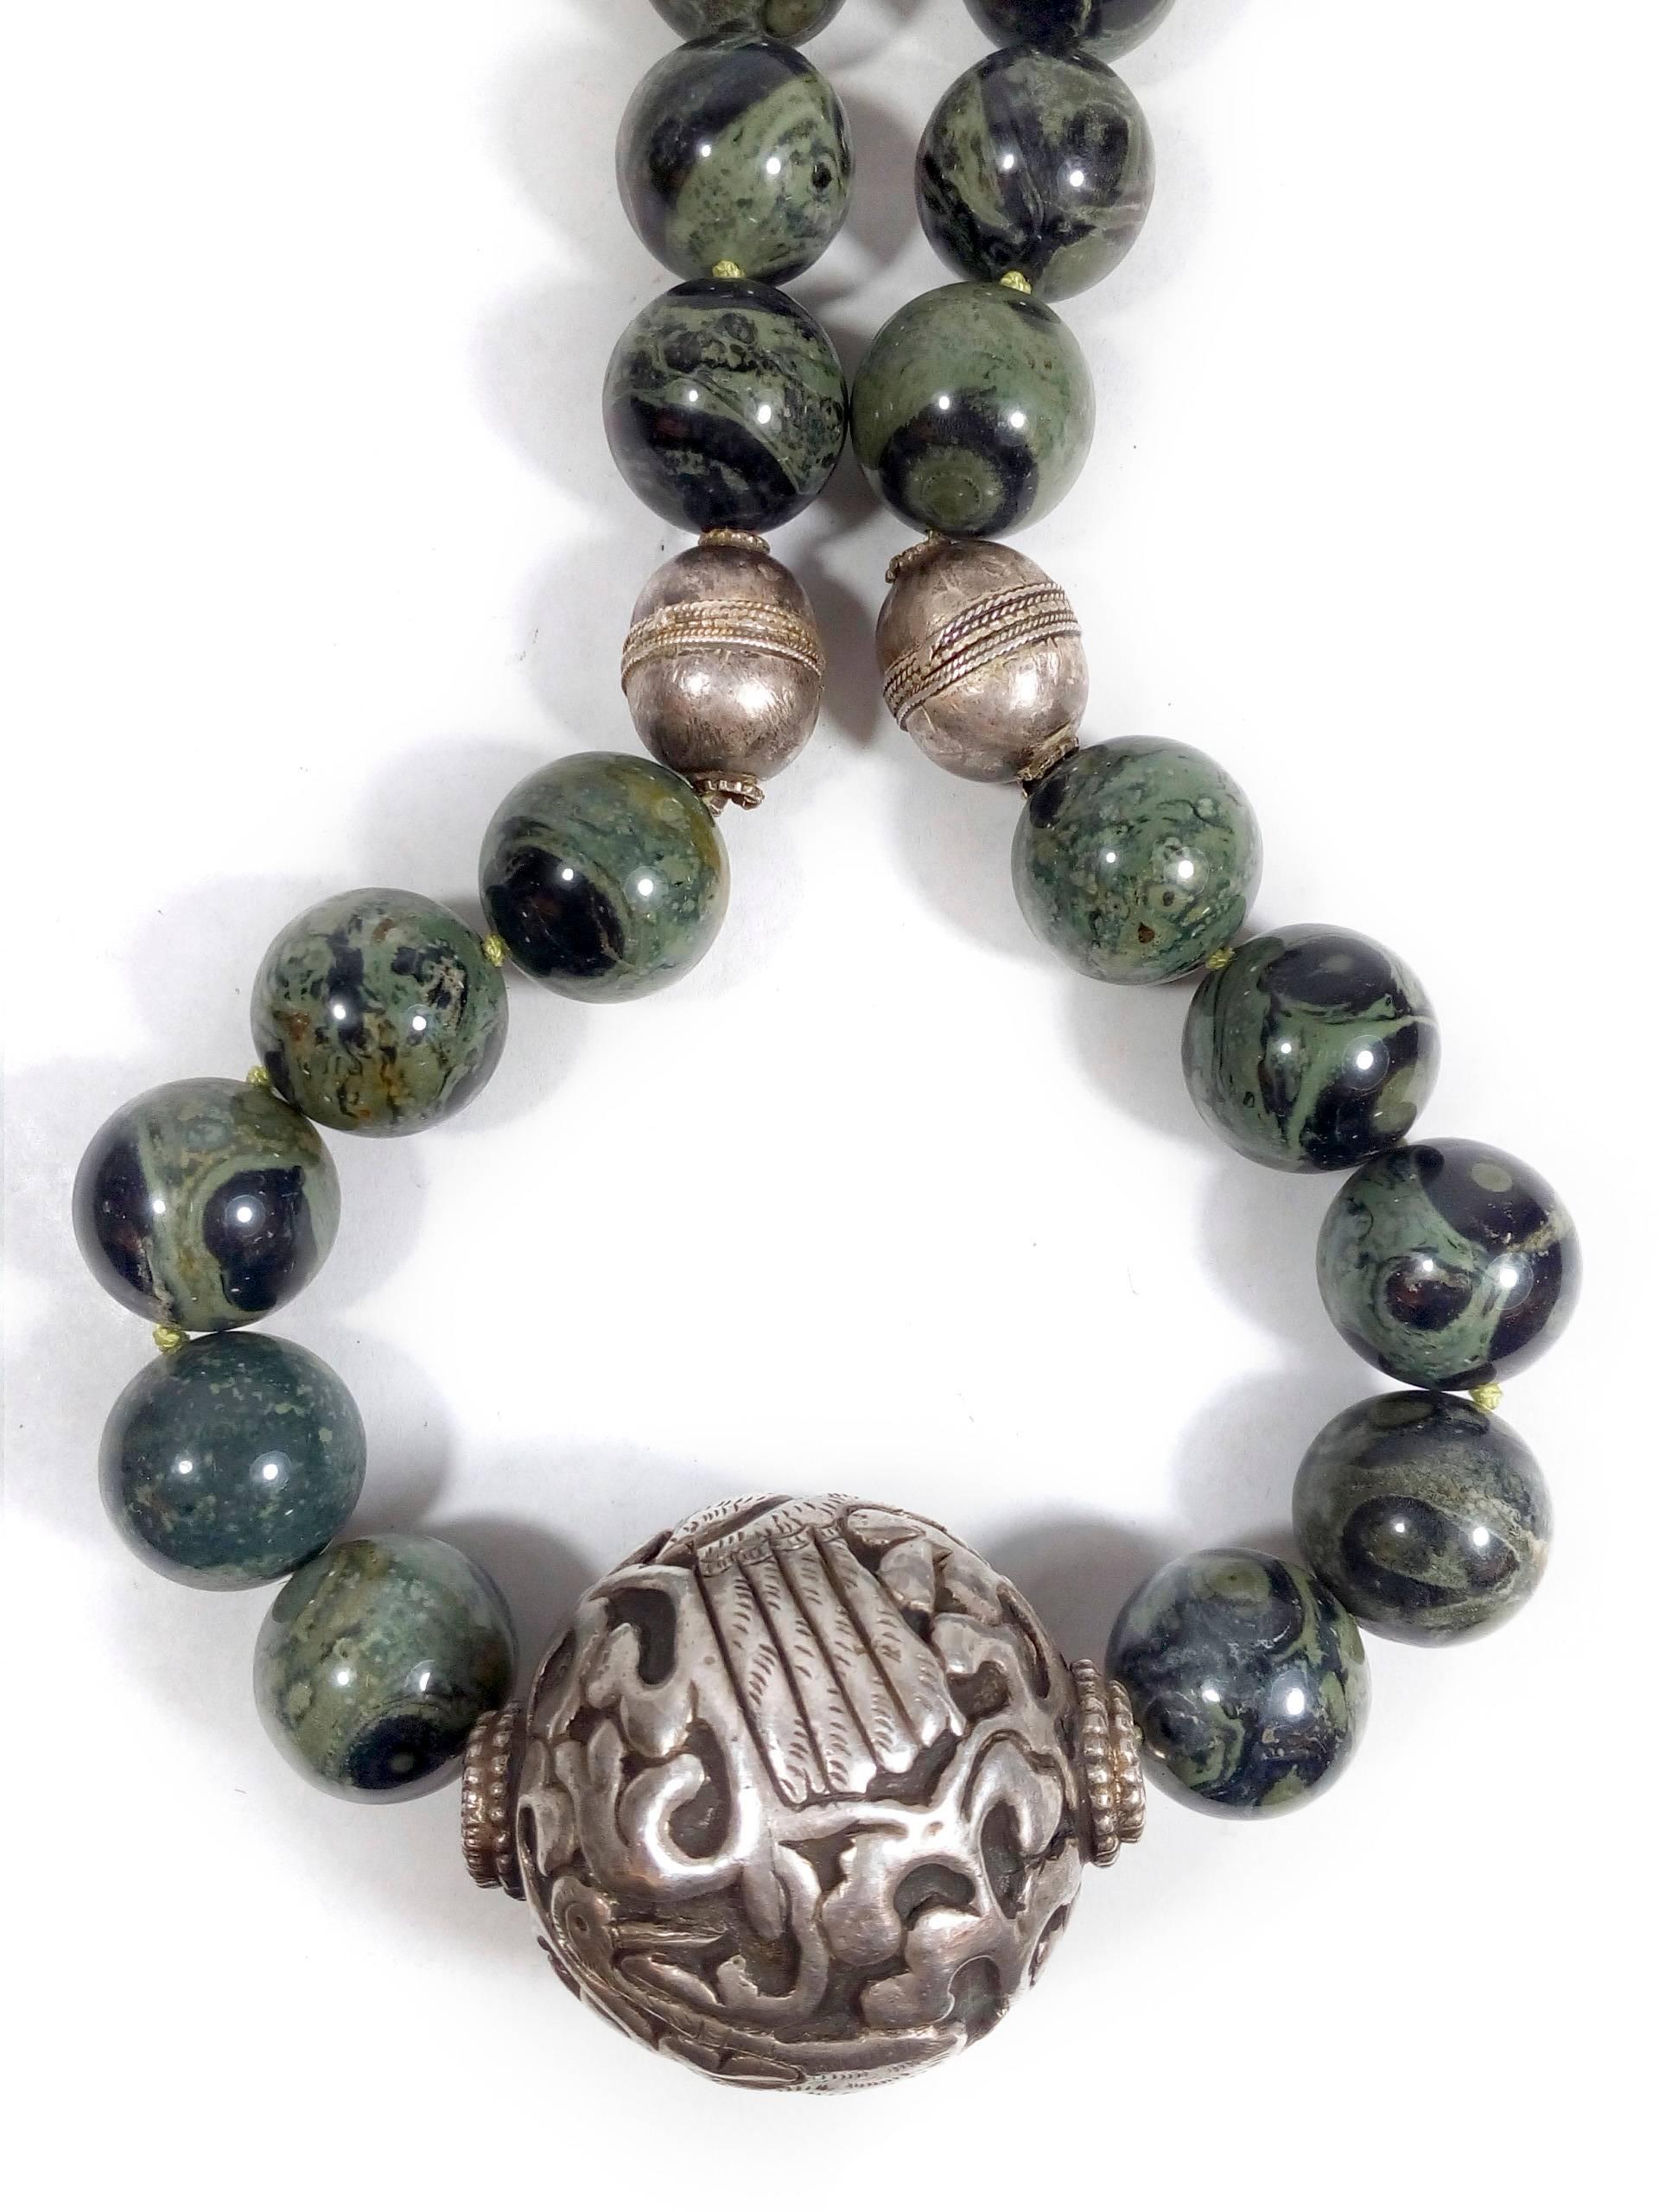 Magnifique grand collier mexicain en argent avec des perles rondes en pierre serpentine polie et mouchetée. L'élément central est une pièce ronde en argent délicatement sculptée à la main, représentant deux grands oiseaux debout sur un arbre